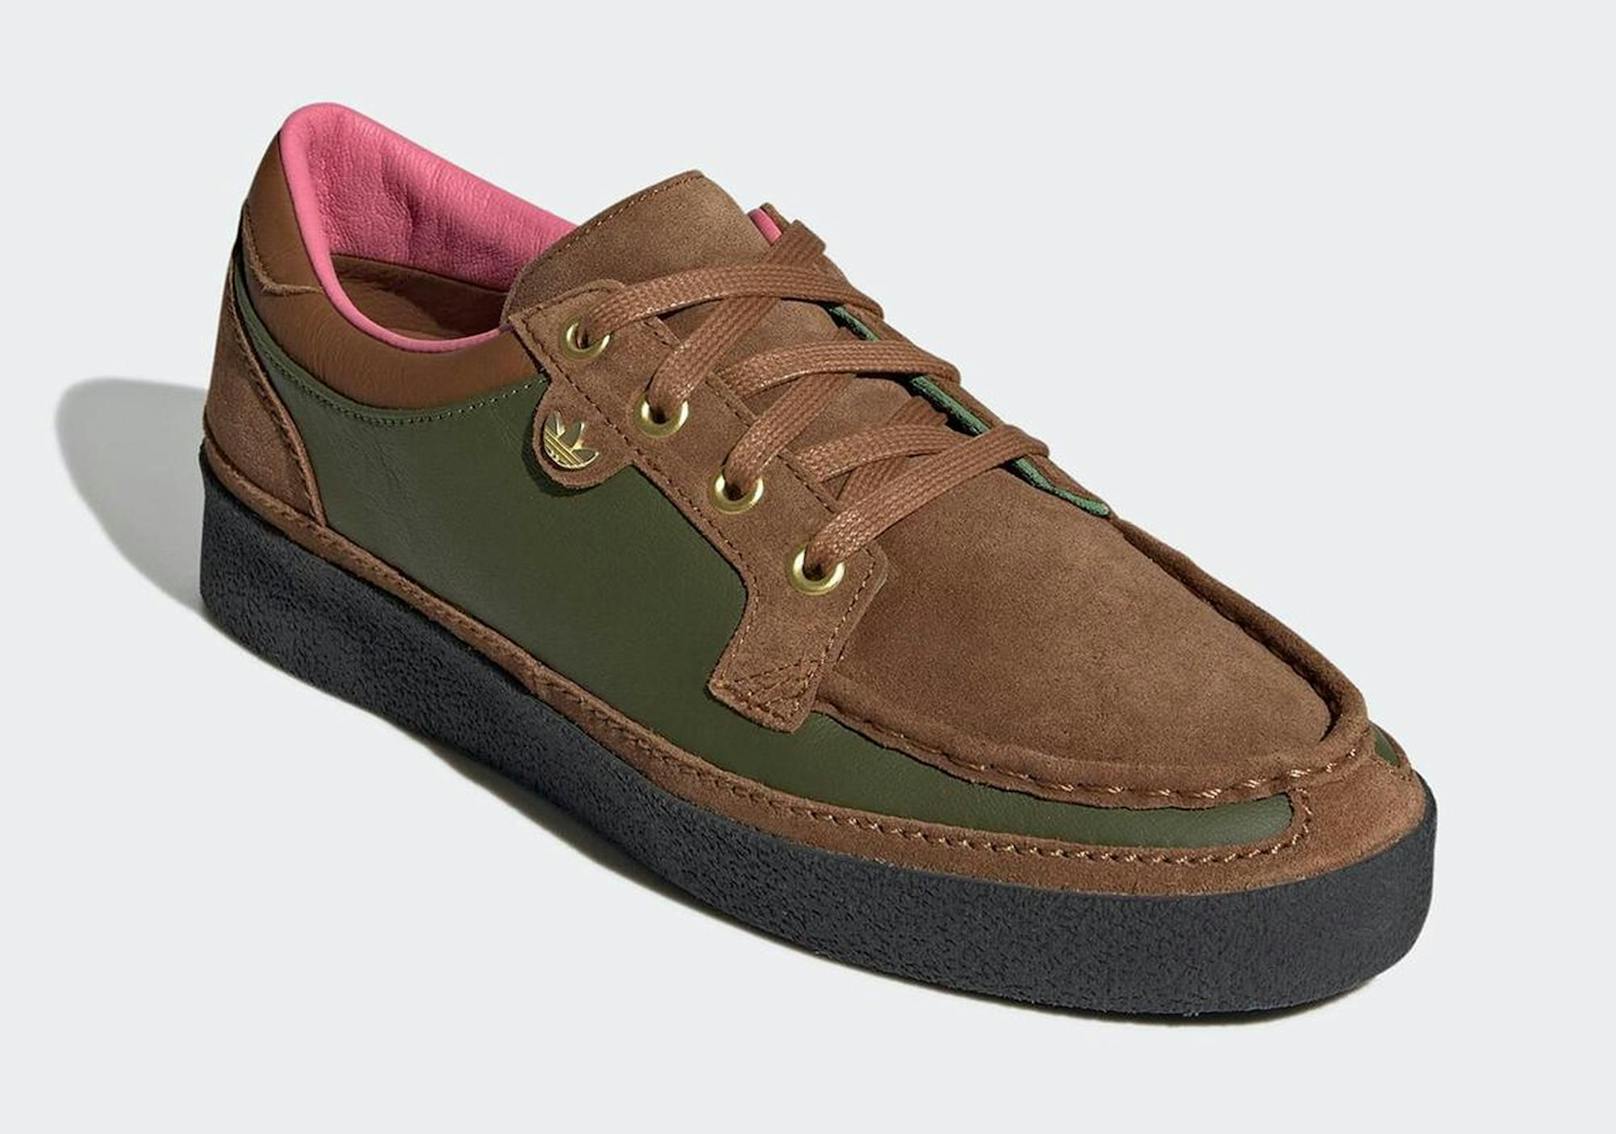 Ein Sneaker, der irgendwie auch an einen Mokassin erinnert – das ist der Ned Flanders Schuh.